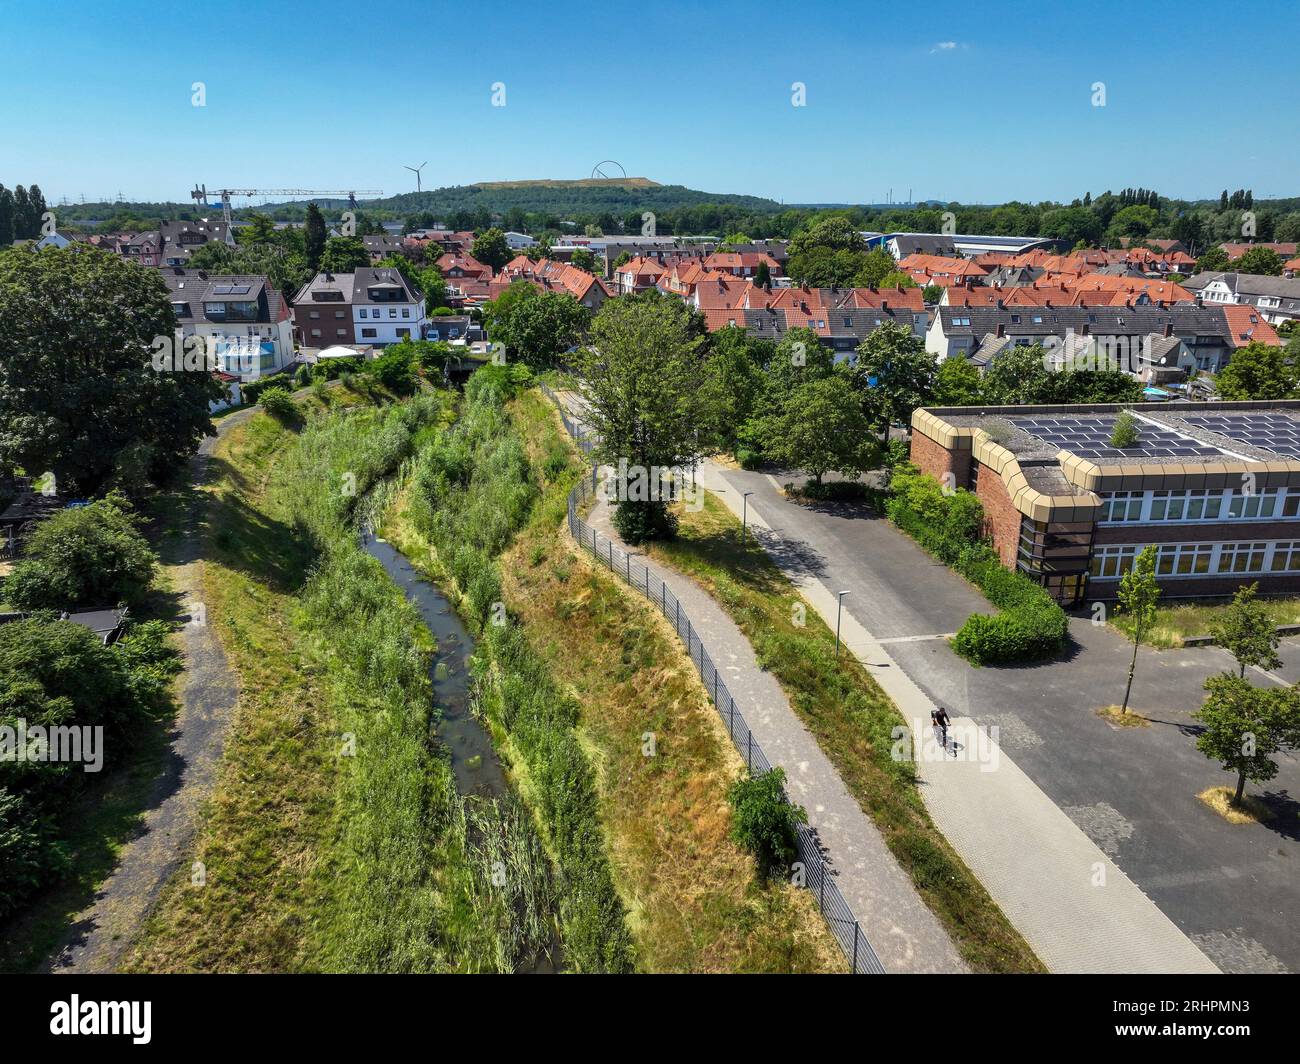 Recklinghausen, Renania del Norte-Westfalia, Alemania - Hellbach renaturalizado, curso de agua renaturalizado Foto de stock